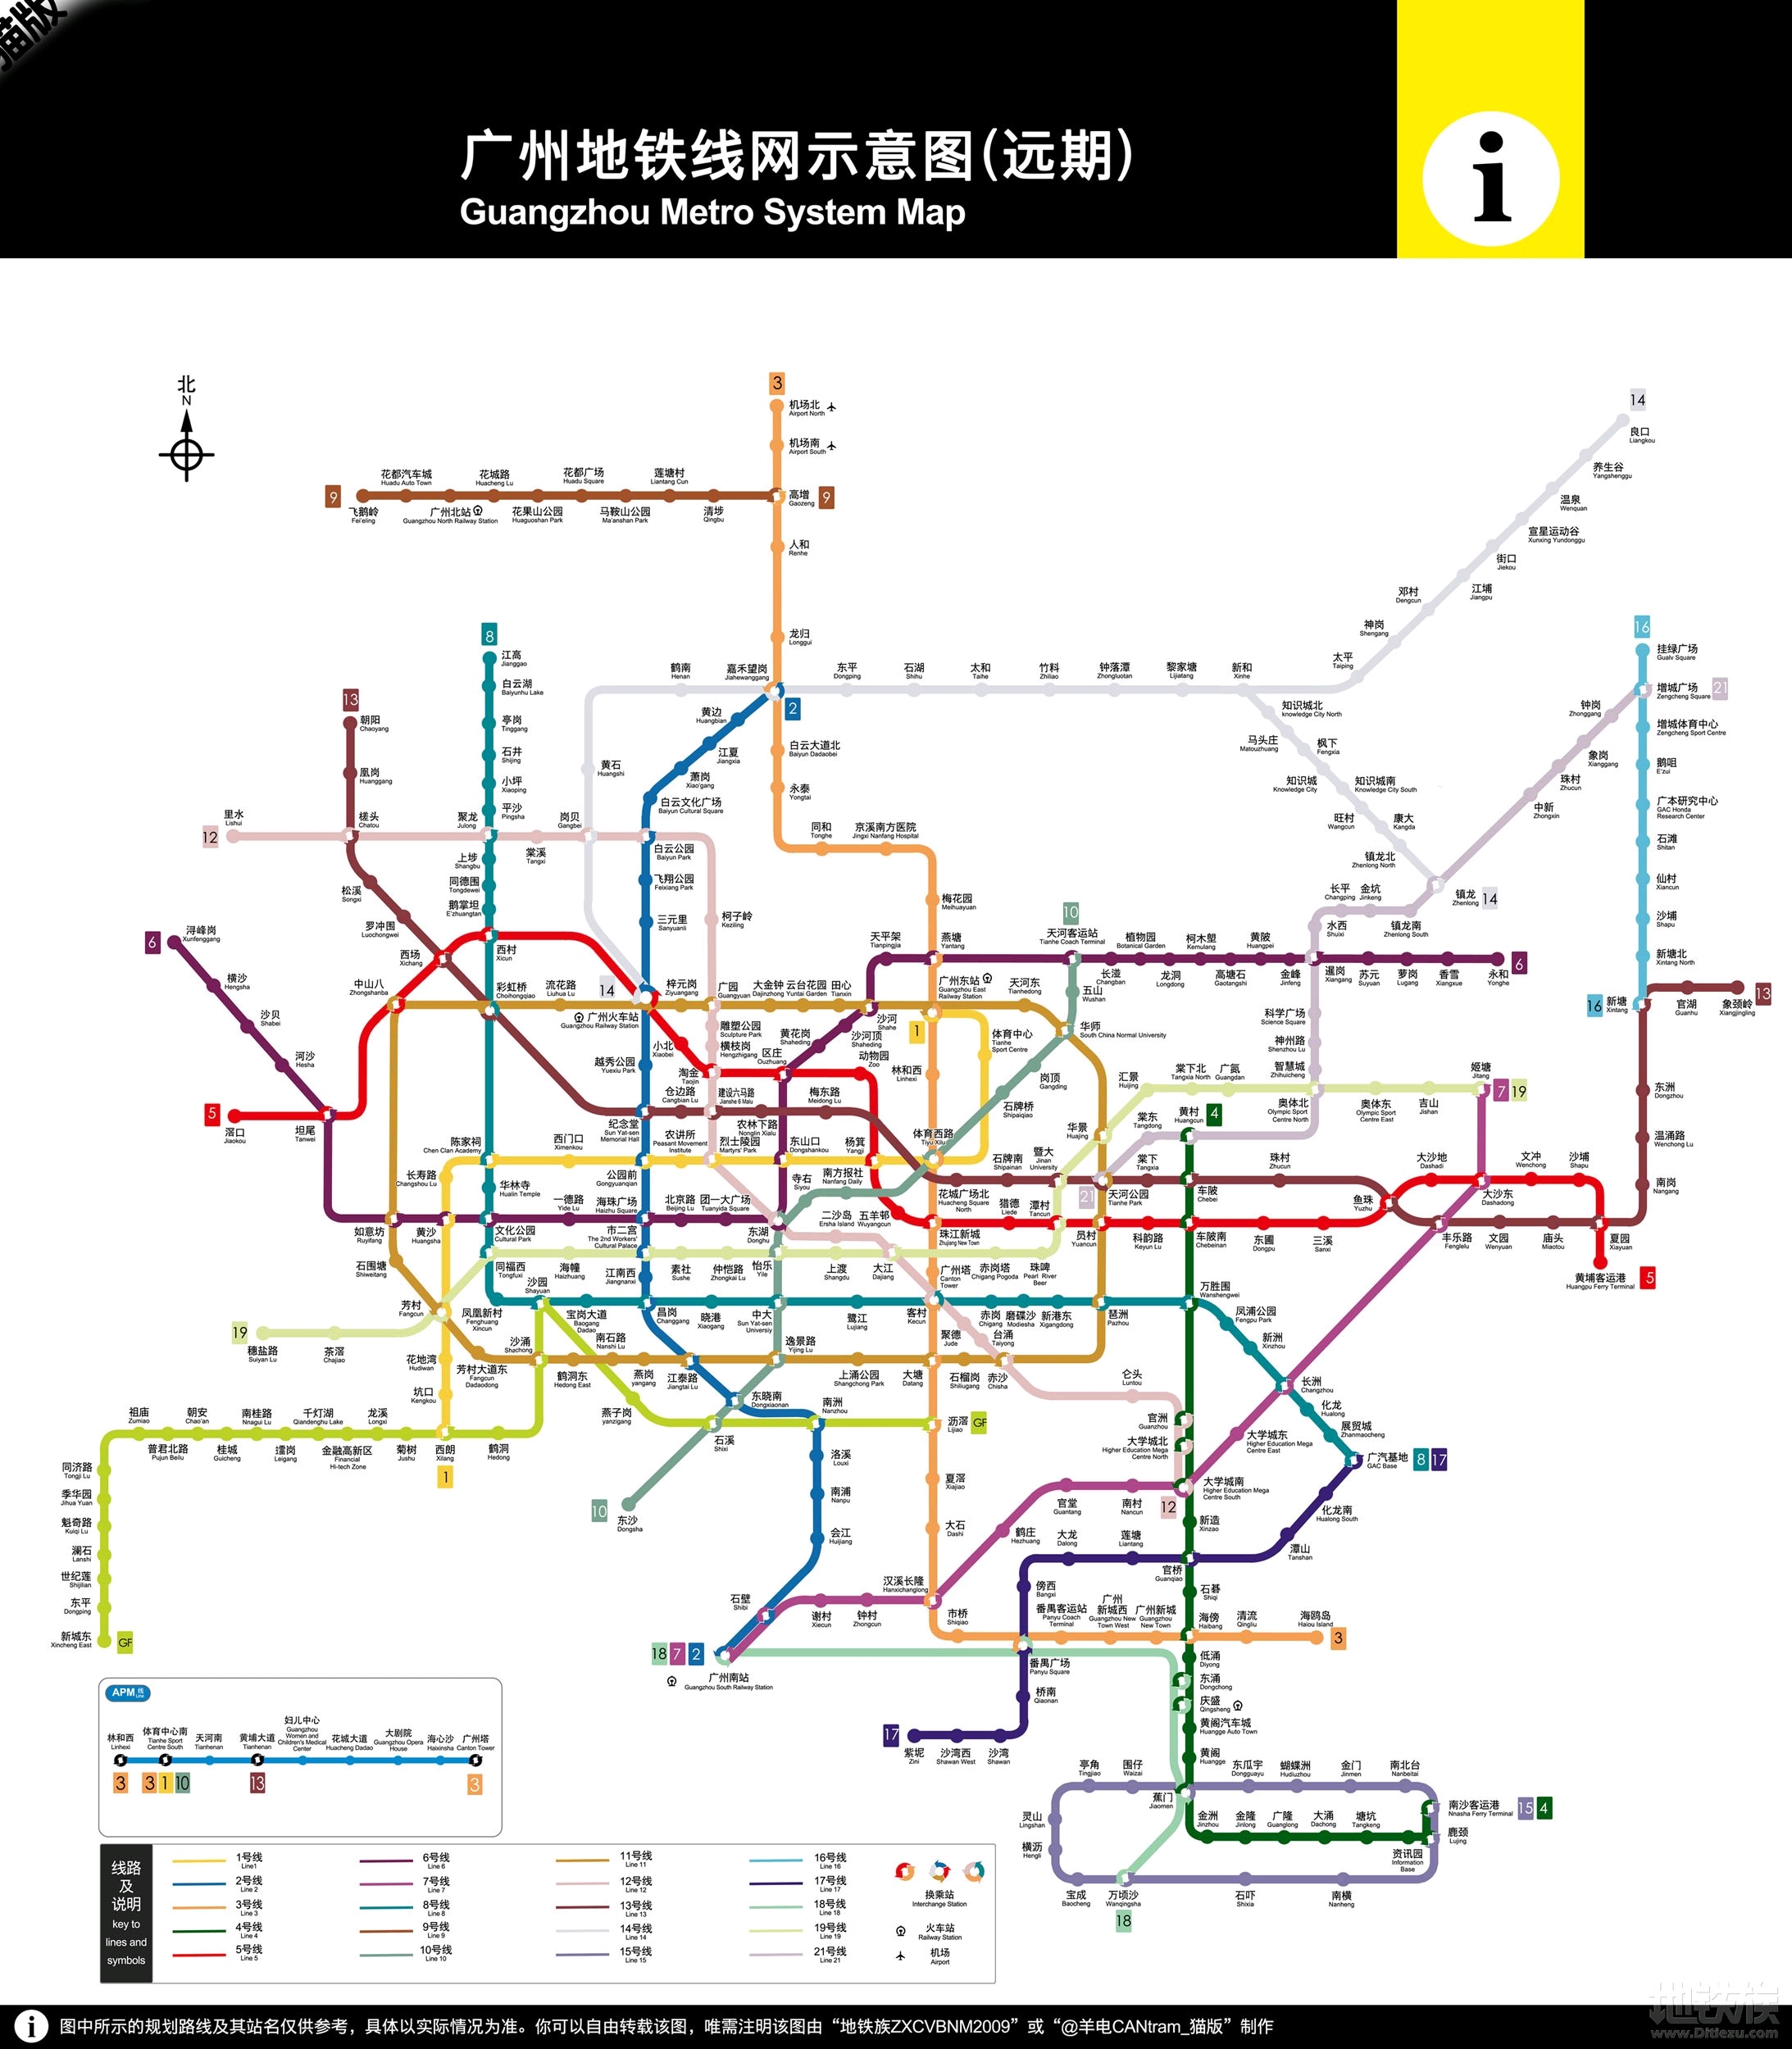 南沙区 (15)围仔 南沙区 (↓环线接蕉门站) 附带广州地铁线路图(远期